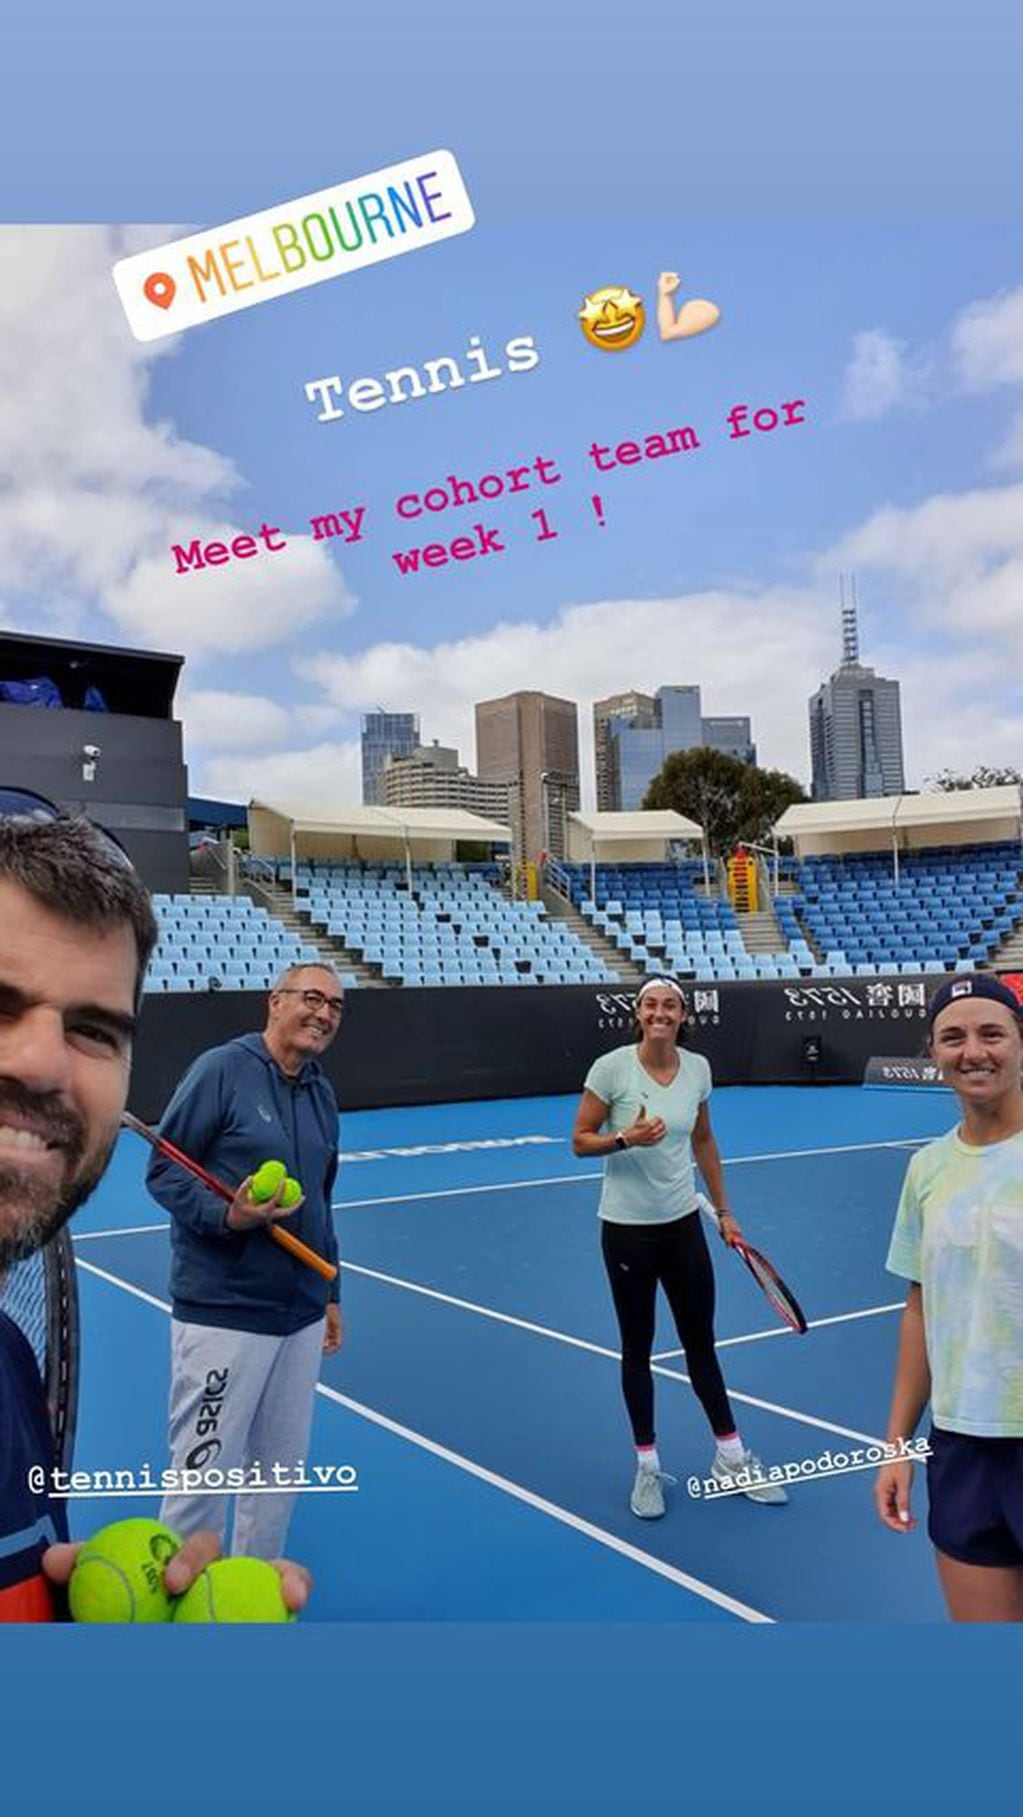 Las tenistas empezaron a moverse en las canchas de Melbourne luego del aislamiento. (@carogarcia)